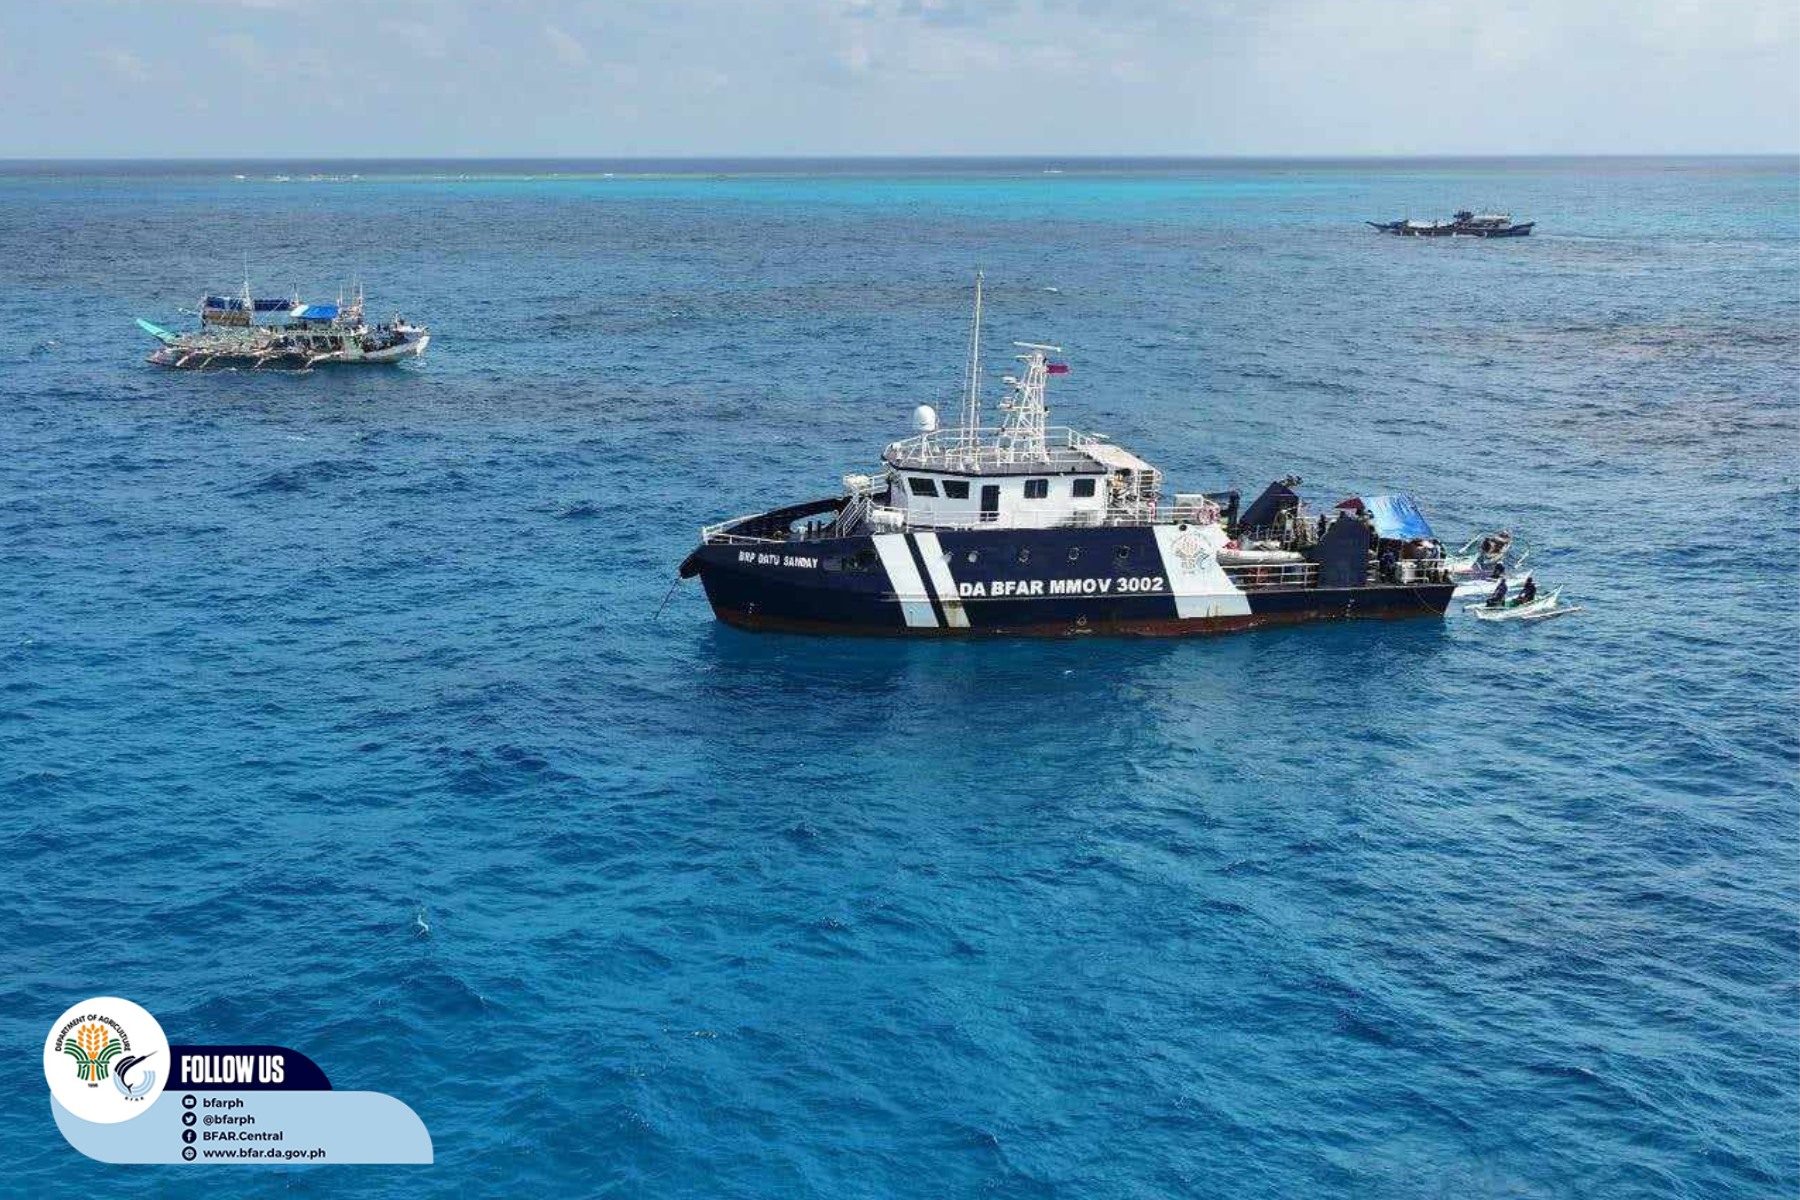 PCG船艦在黃岩島海域護漁。圖/取自PCG《臉書》官方粉專